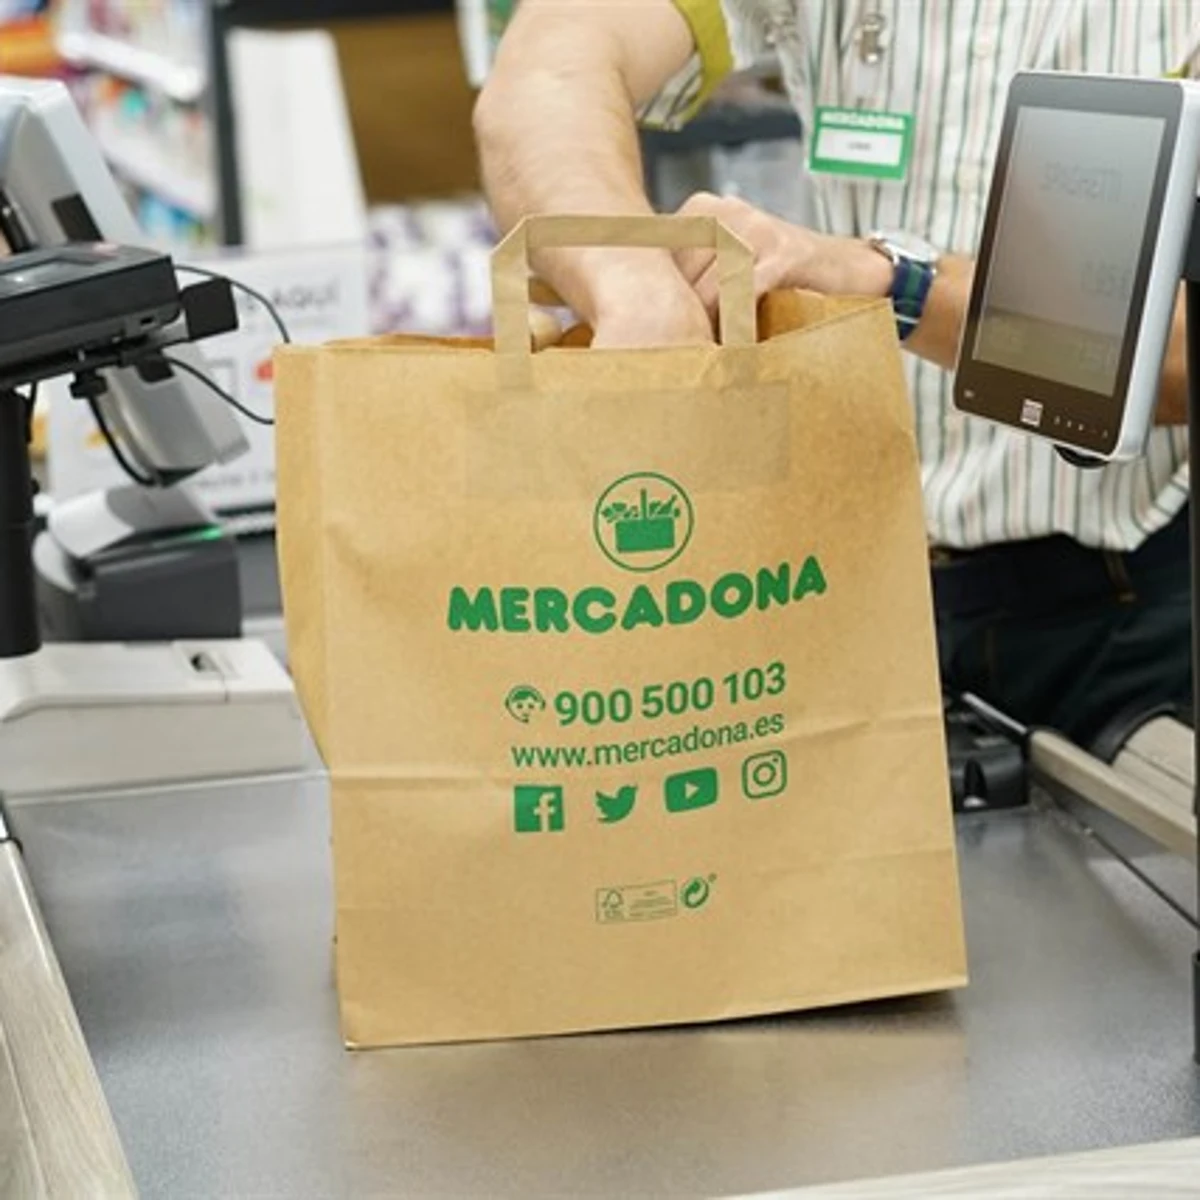 Mercadona retirará todas las bolsas plástico de supermercados antes de abril